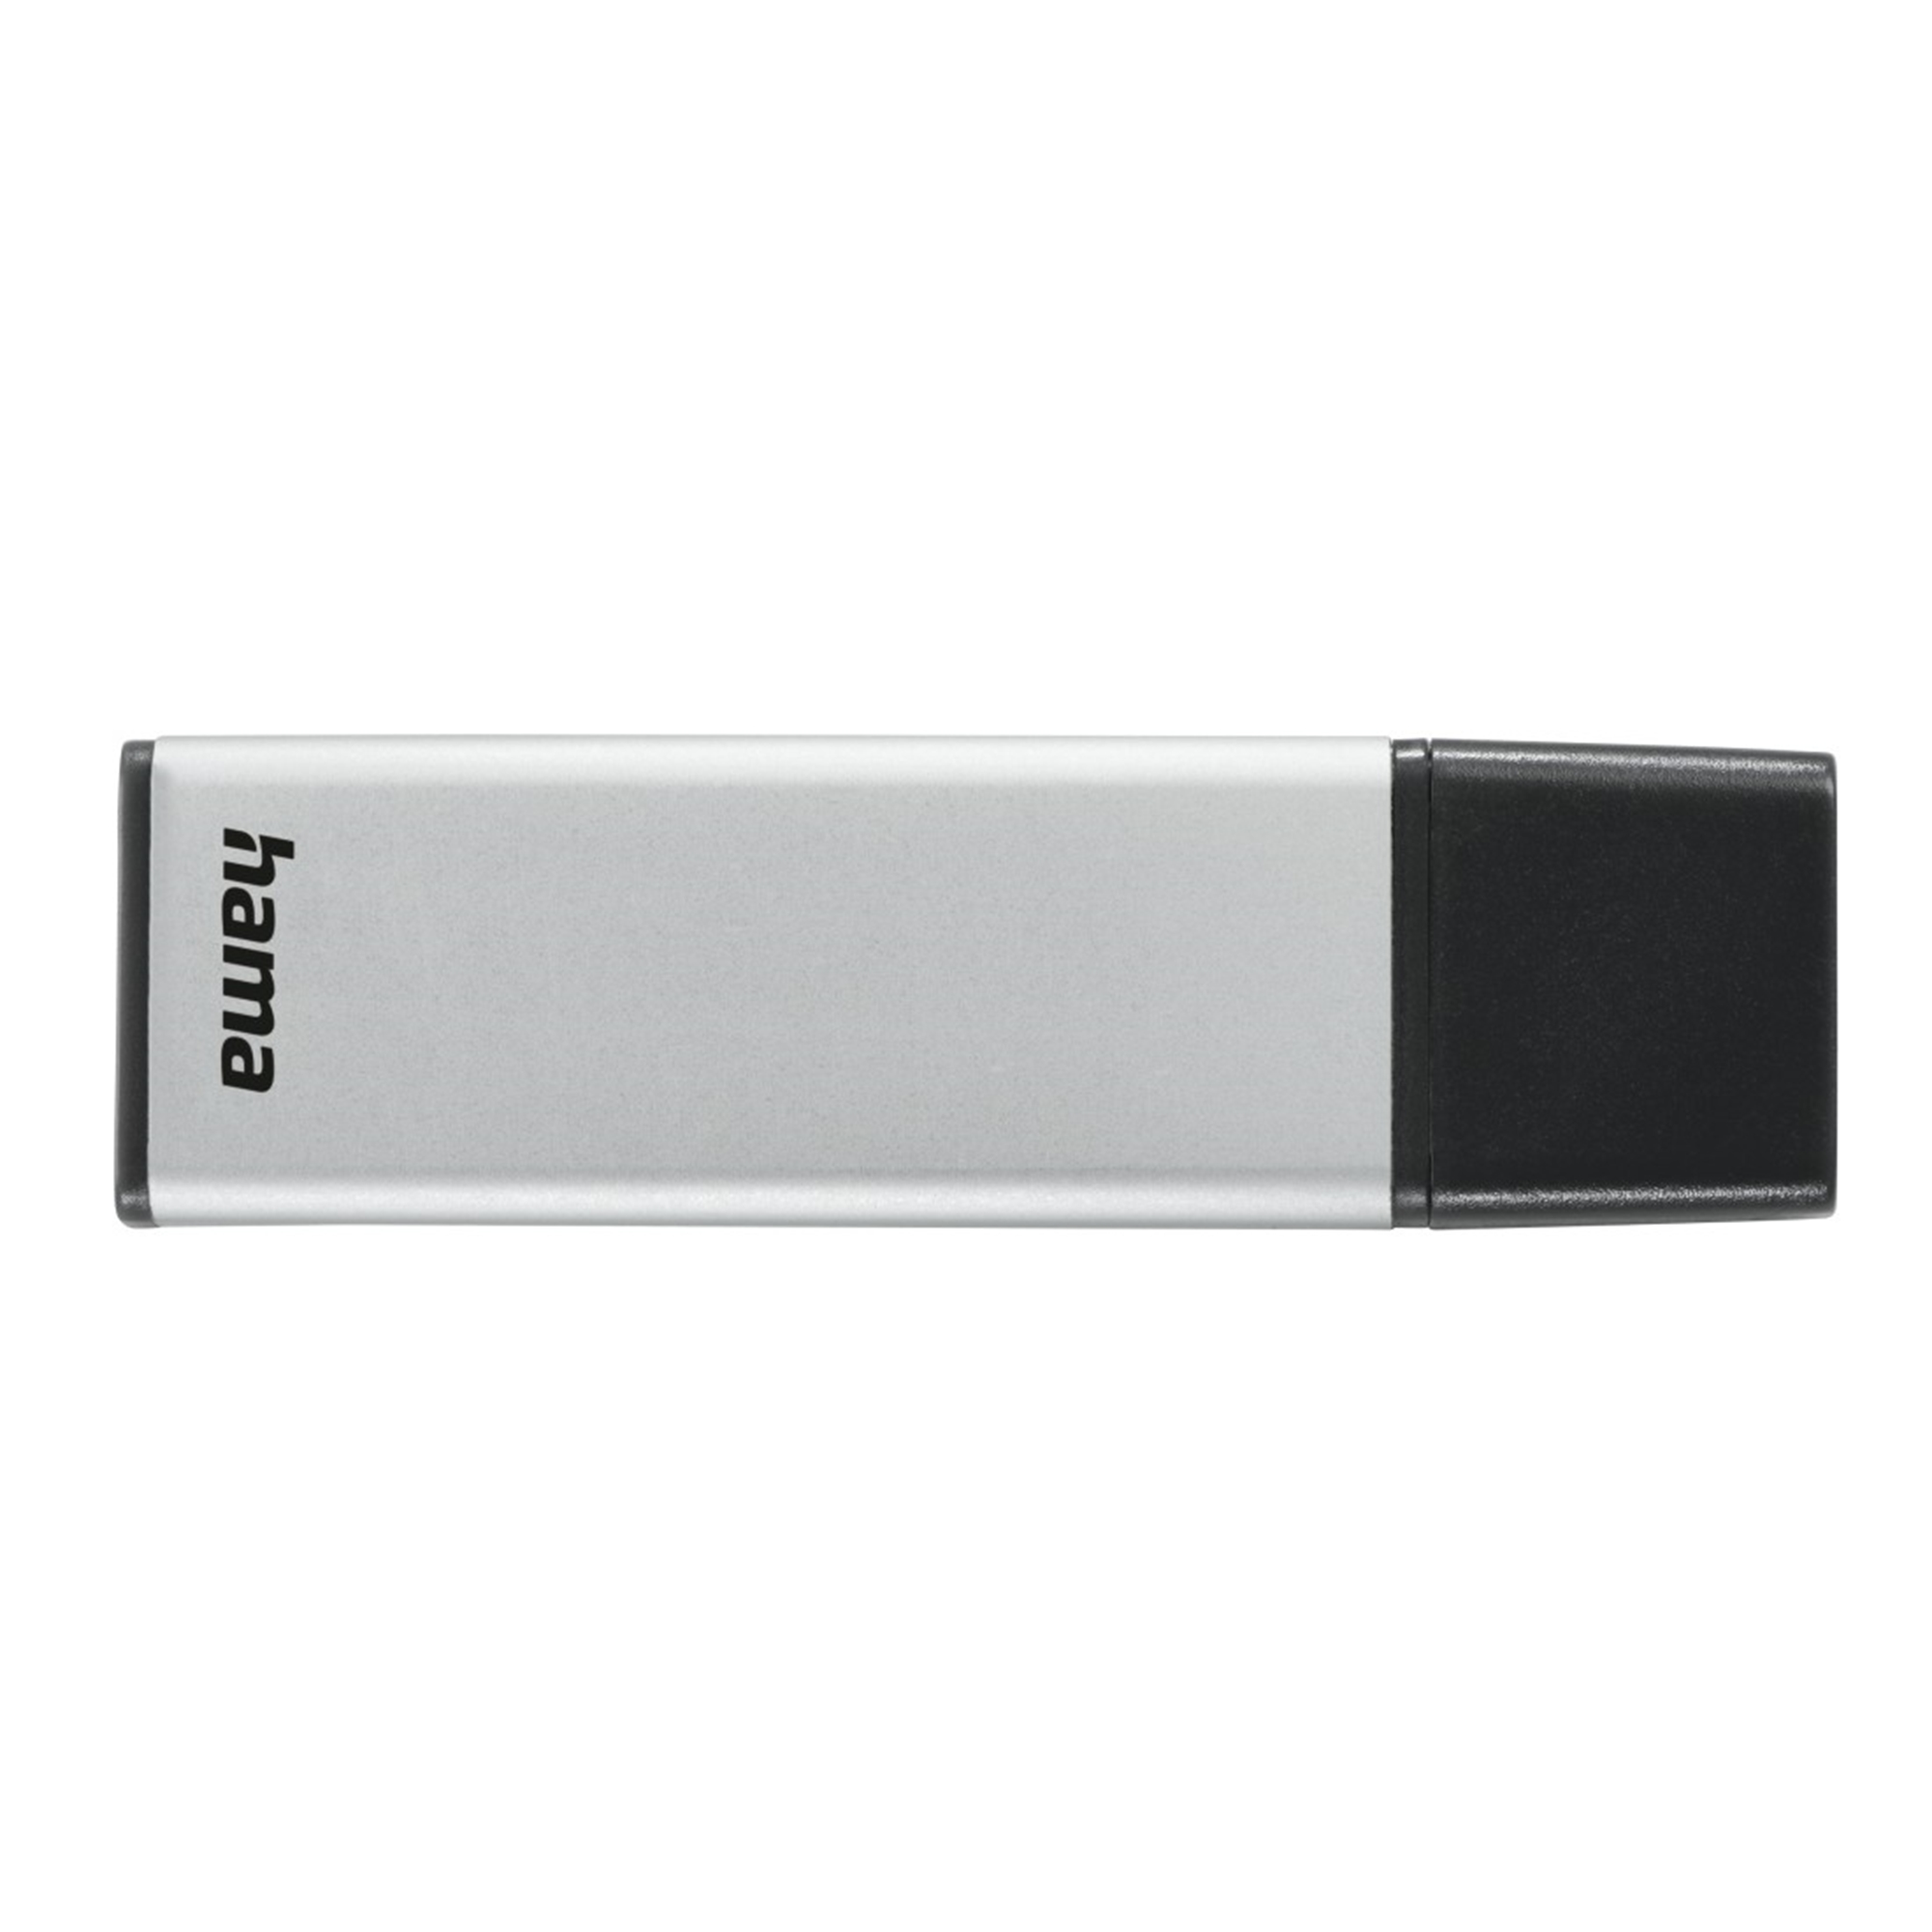 HAMA Classic 256 (Silber, 256 GB USB-Stick GB)